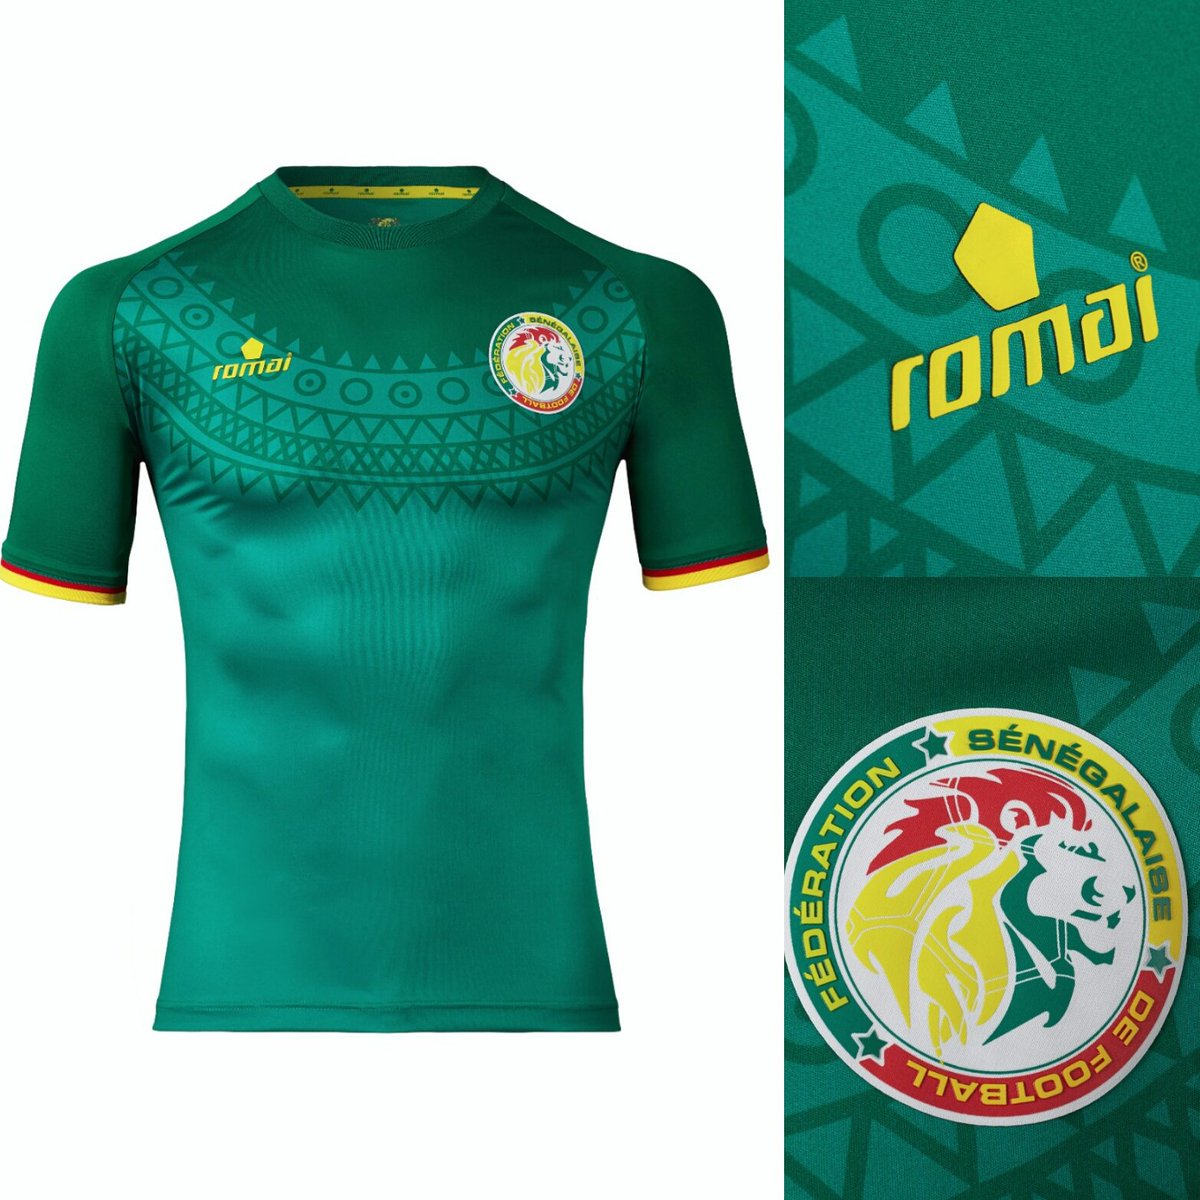 nouveau maillot puma du senegal 2018